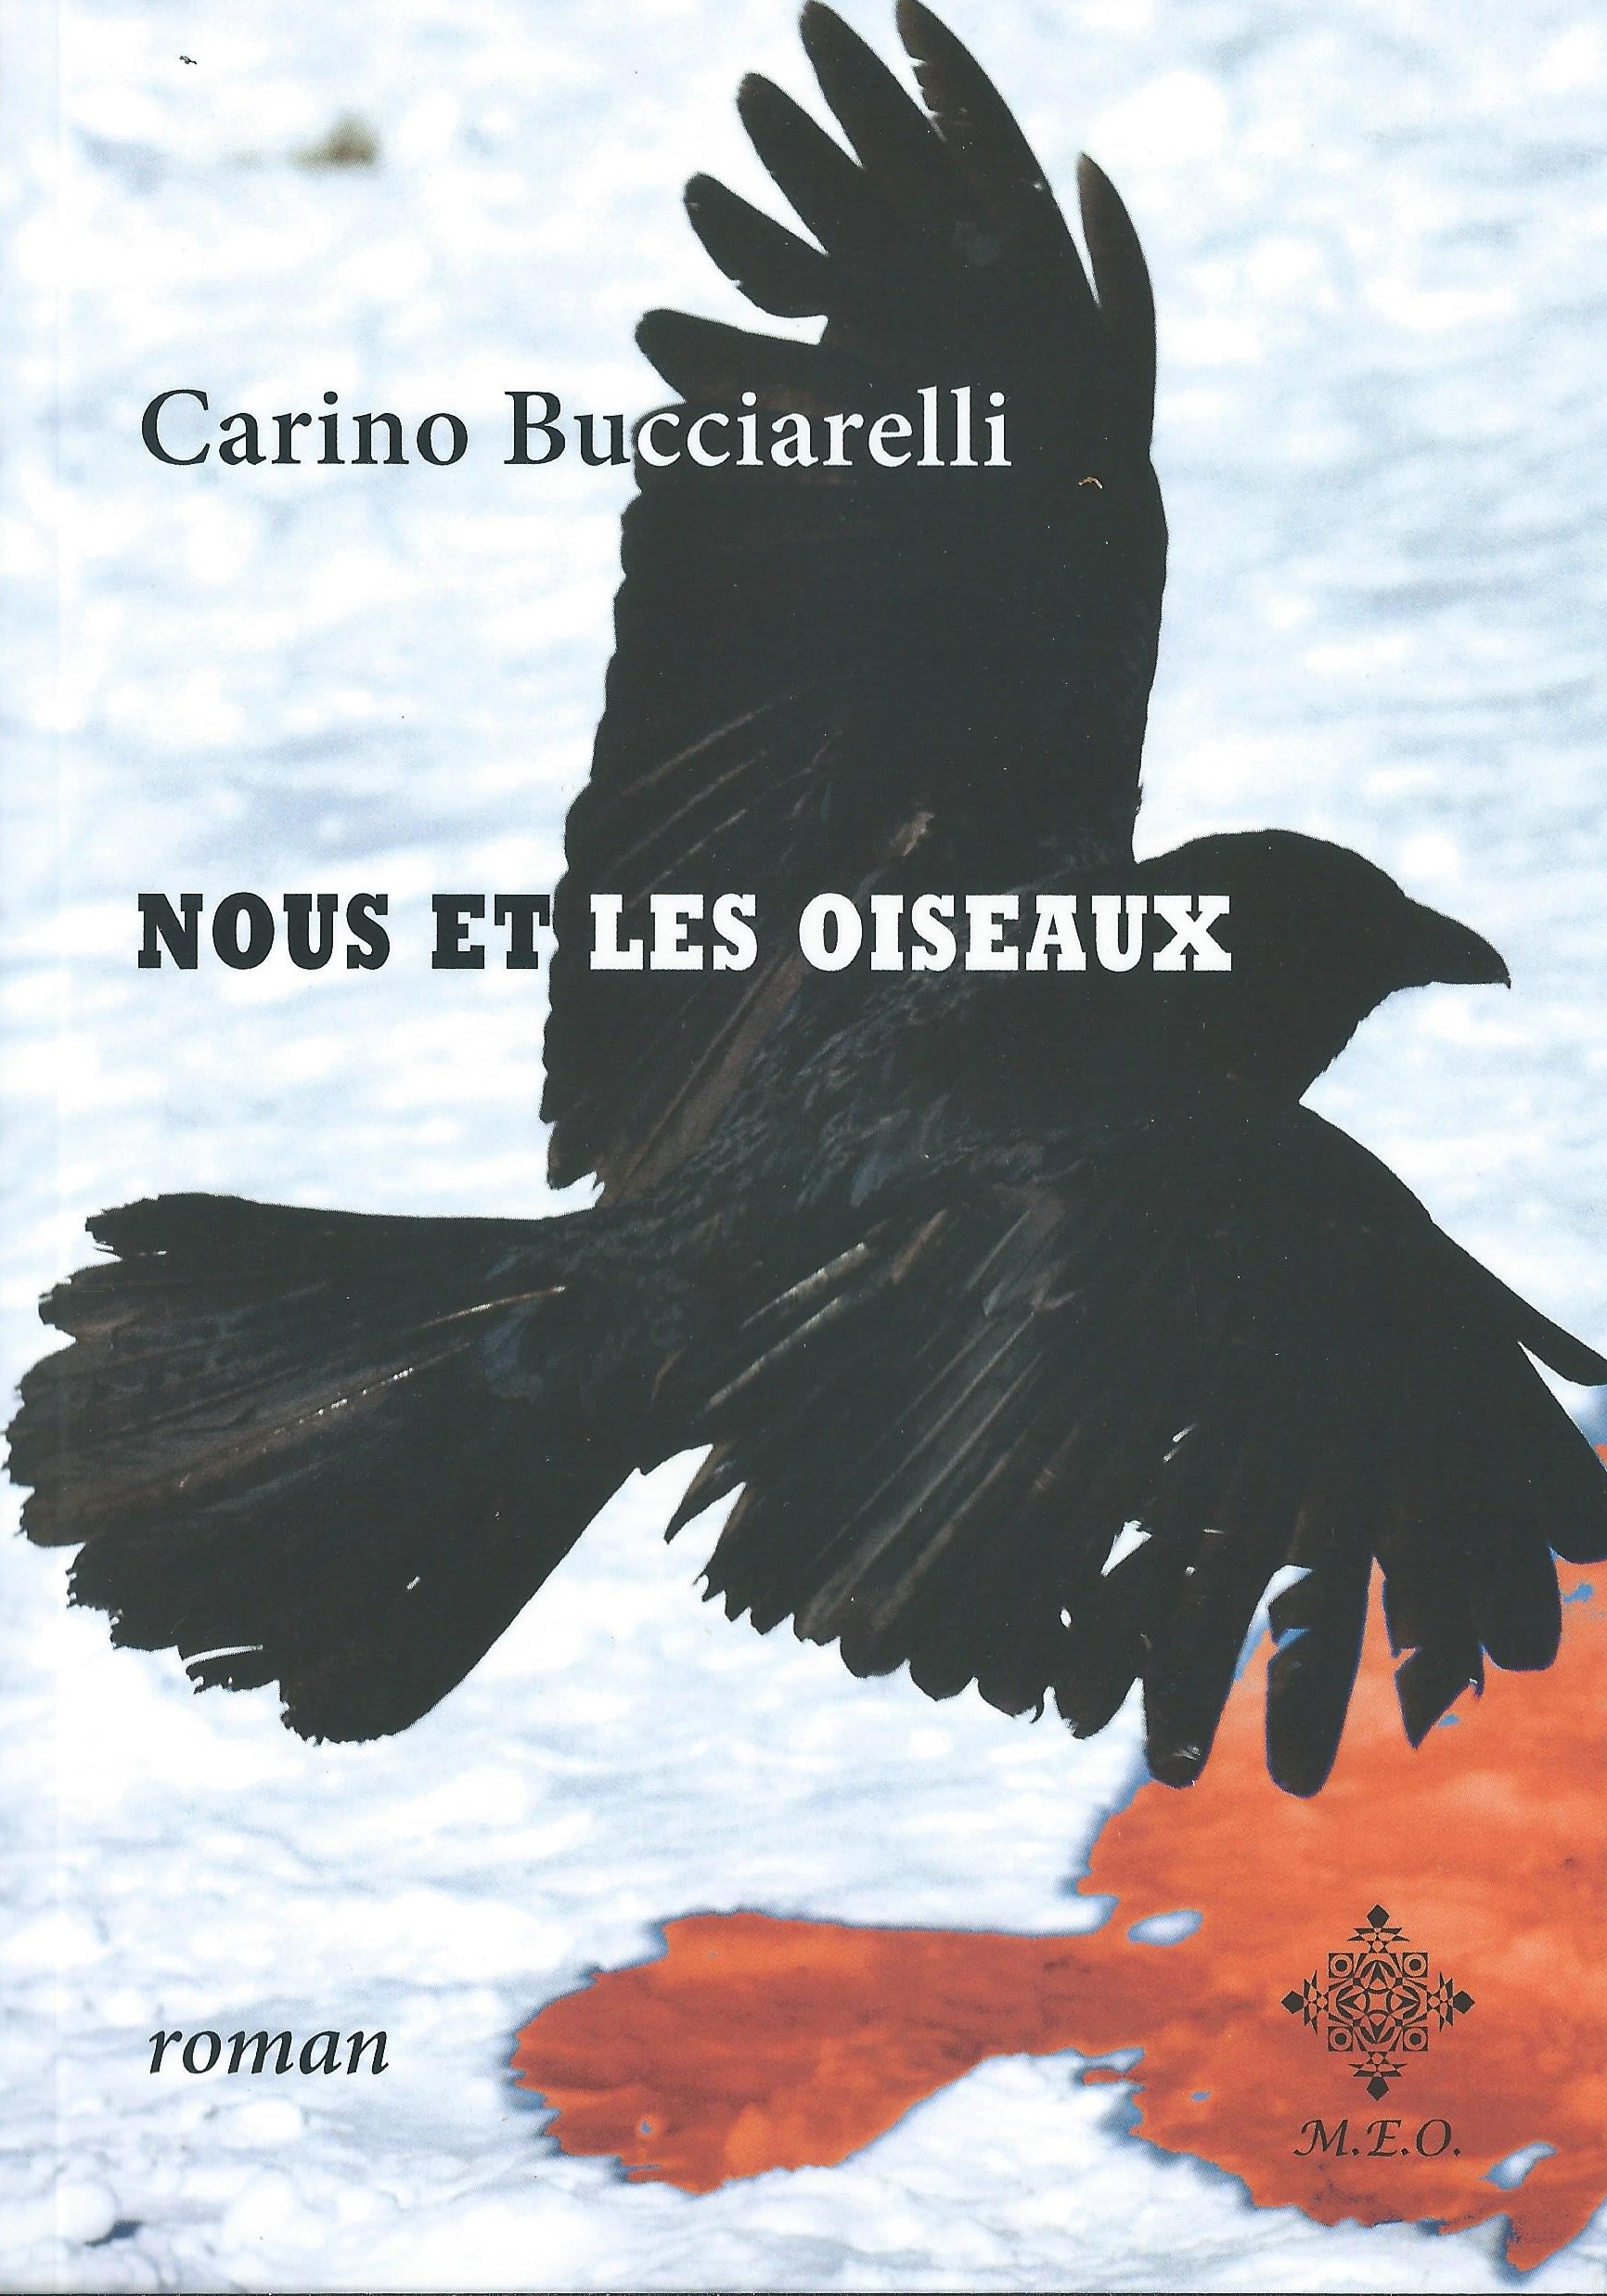 CARINO BUCCIARELLI - Nous et les oiseaux